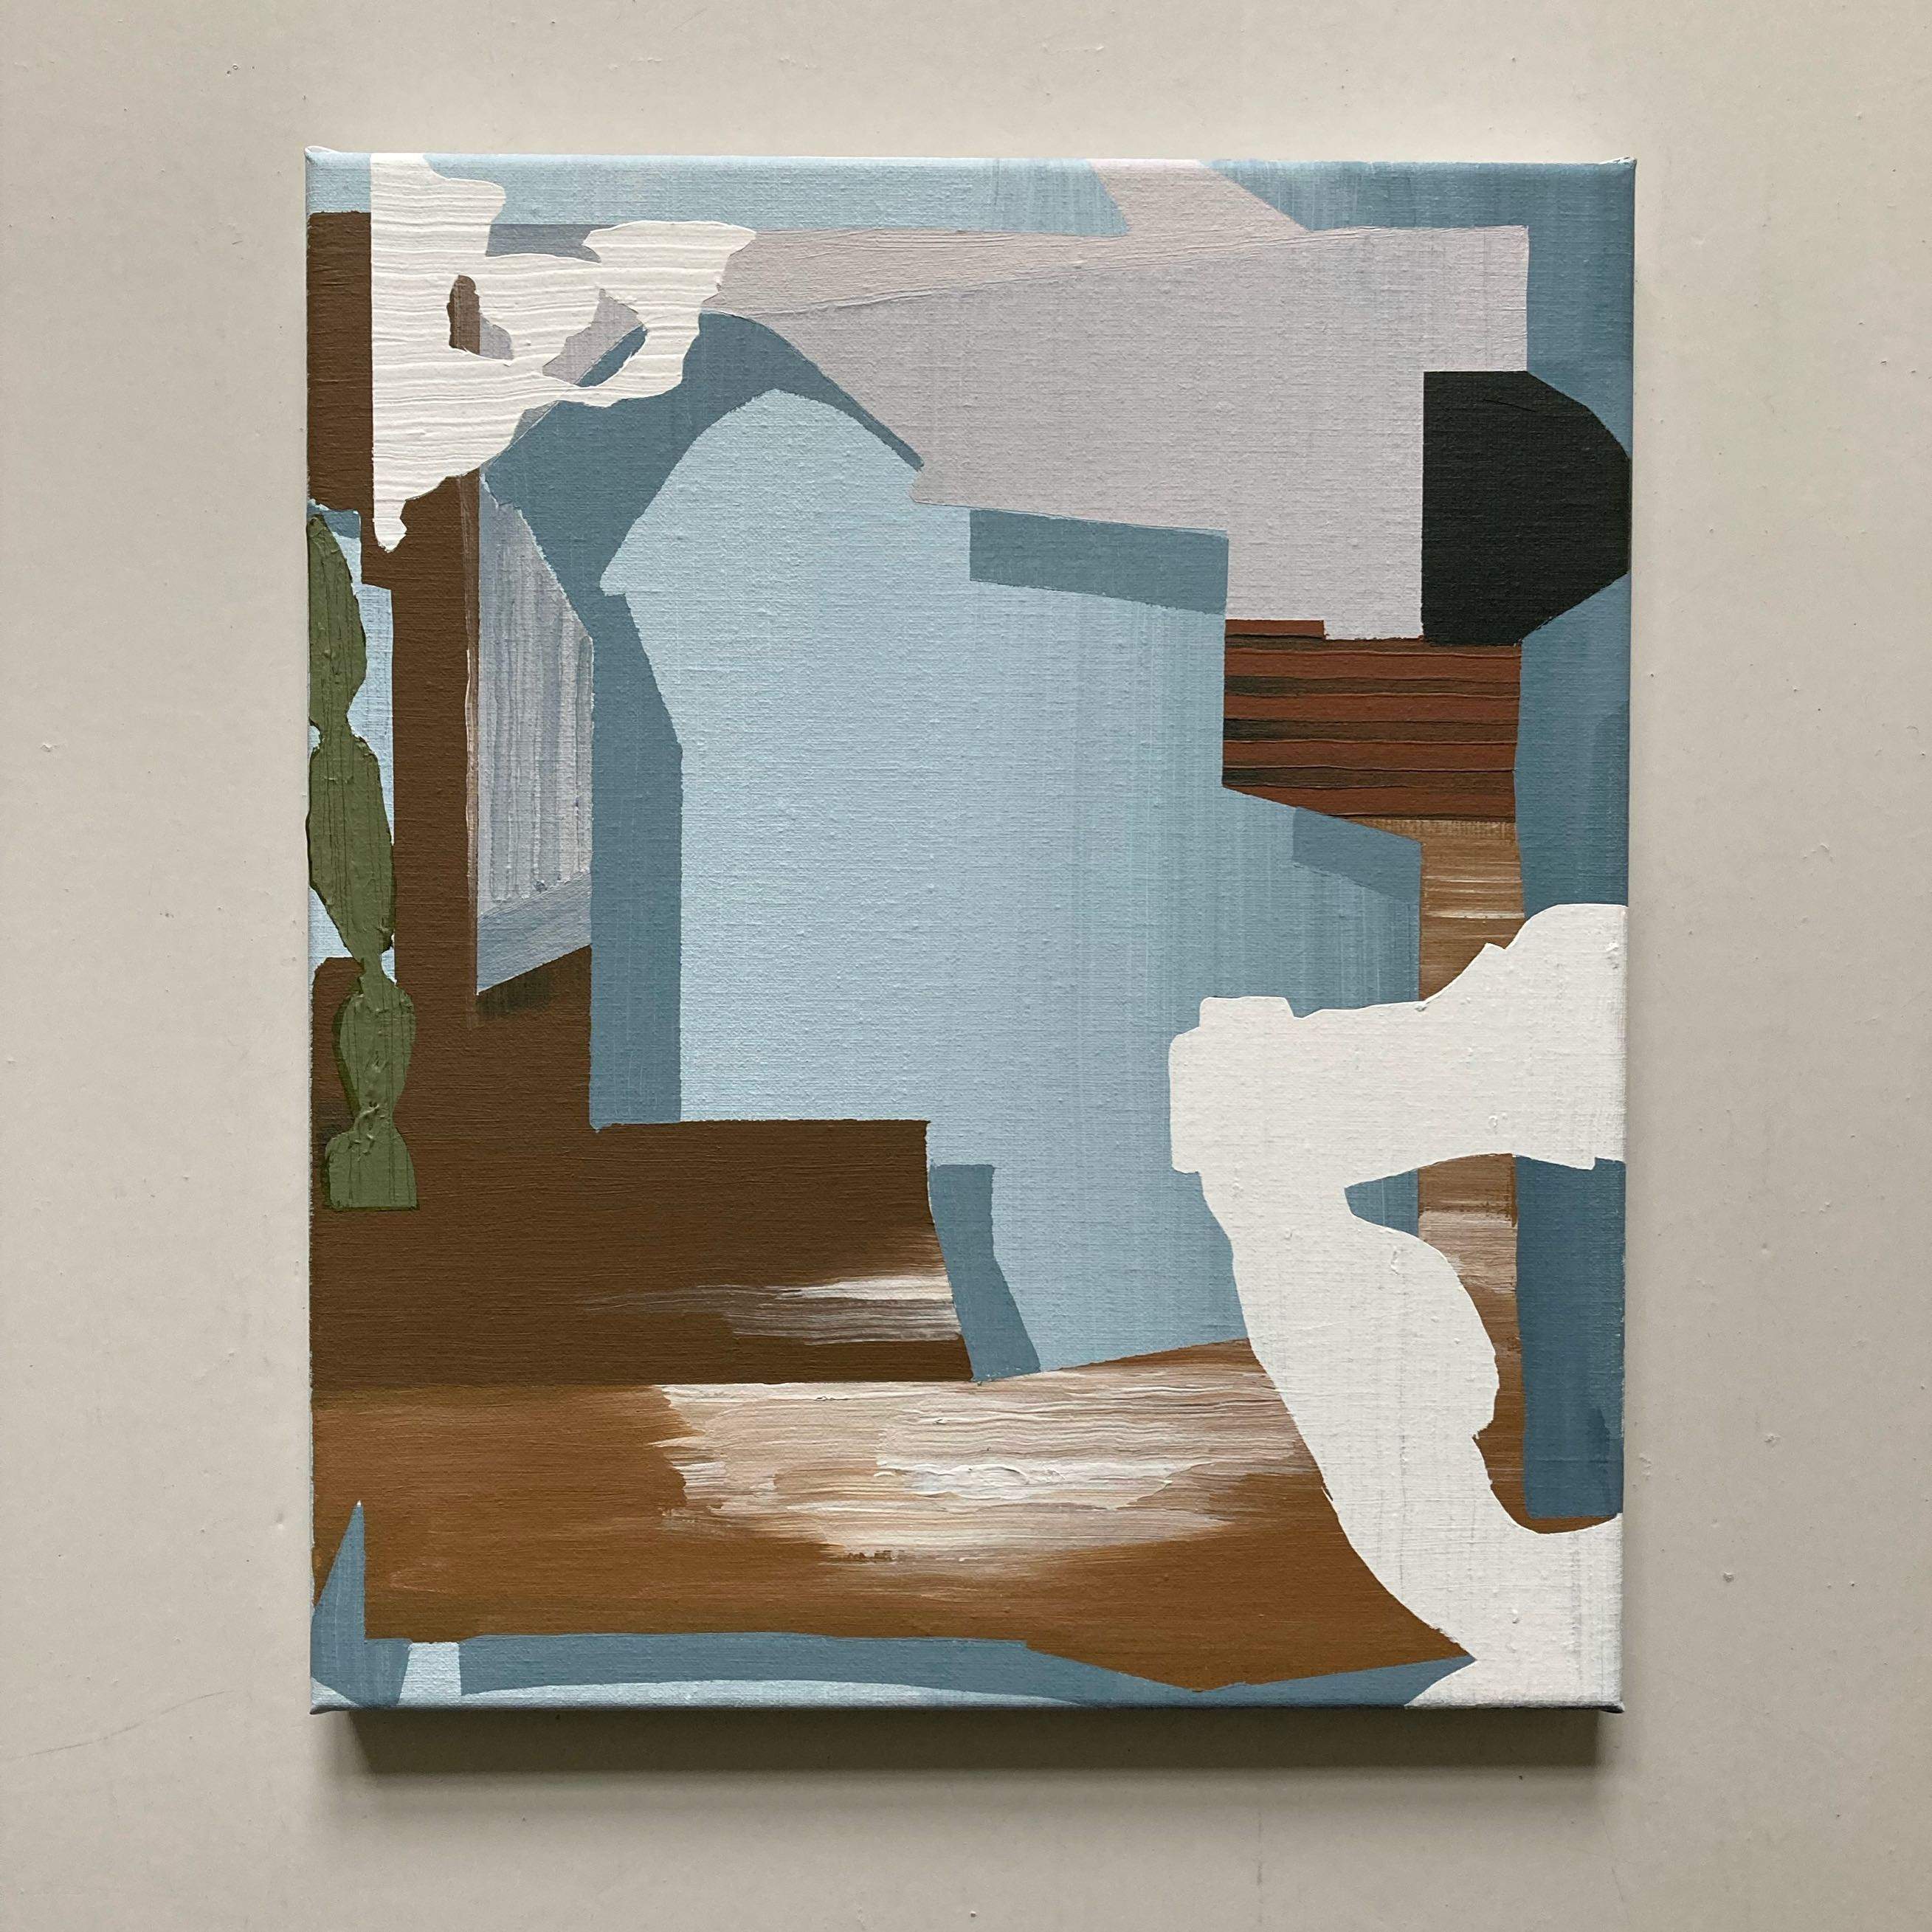 'heirlooms', 34 x 40 cm, acrylics on canvas, 2021